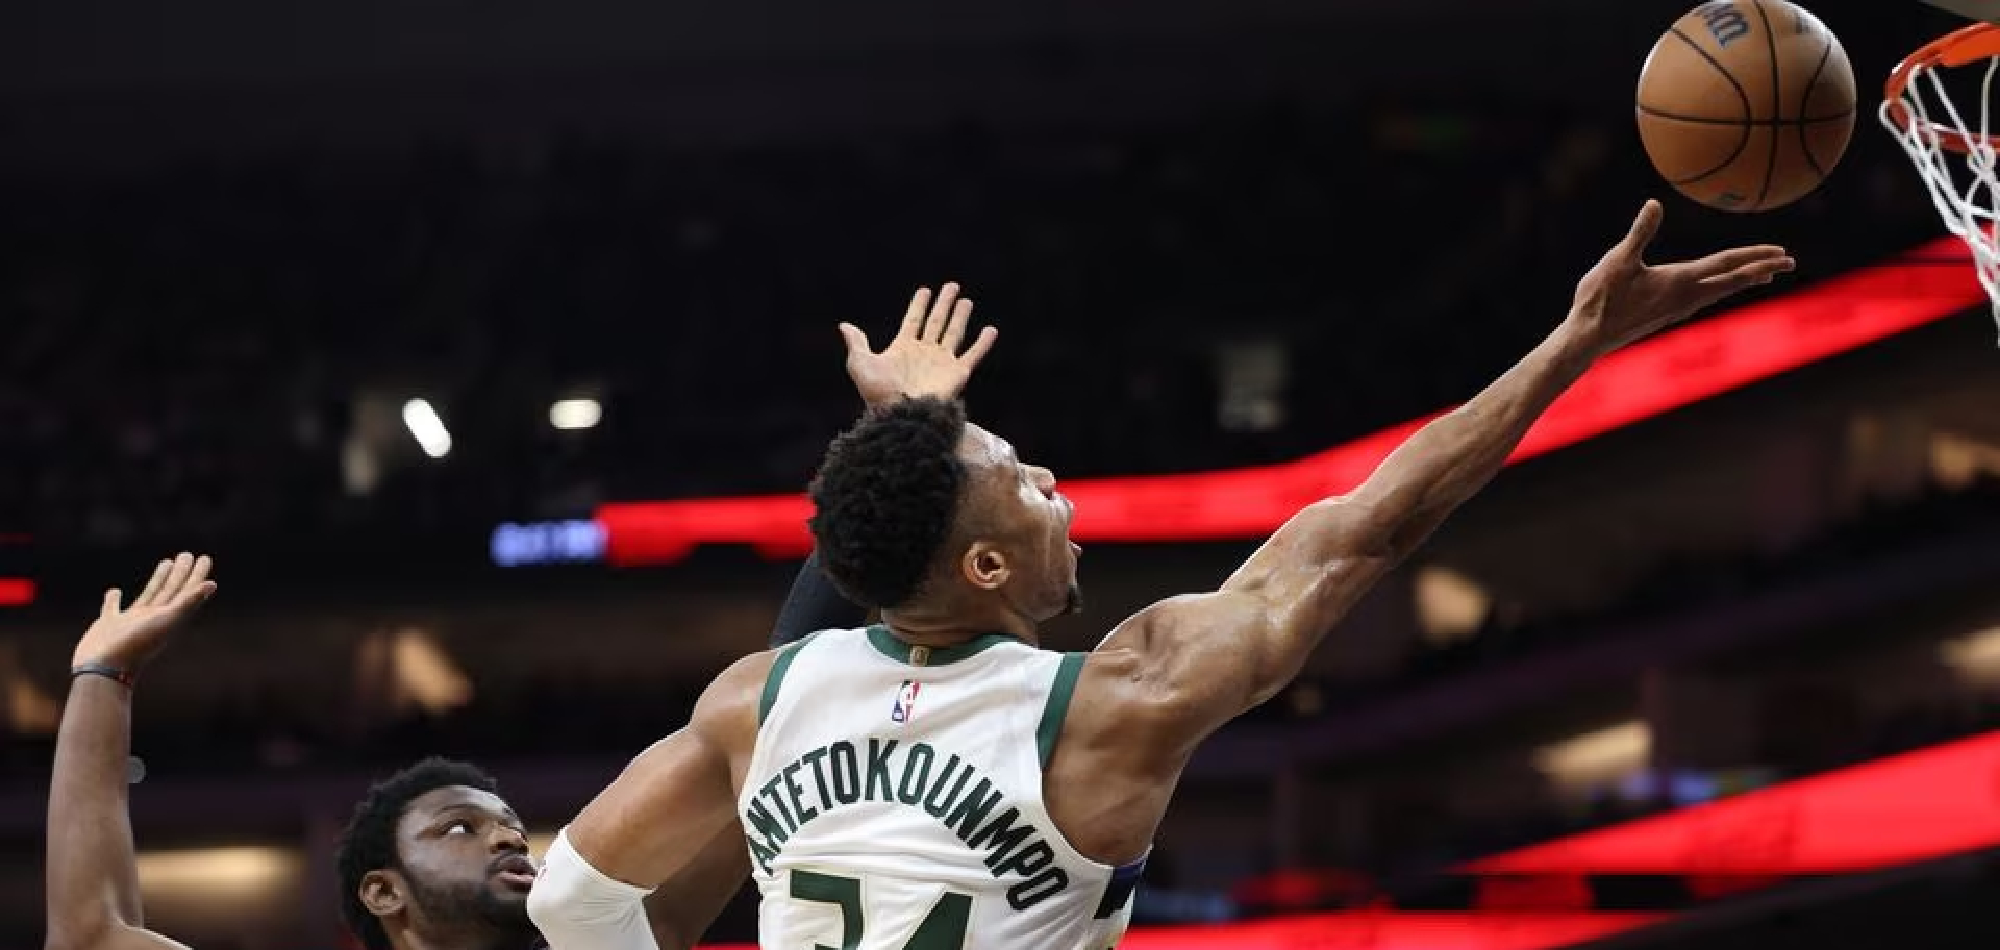 NBA roundup: Giannis Antetokounmpo, Bucks handle Kings